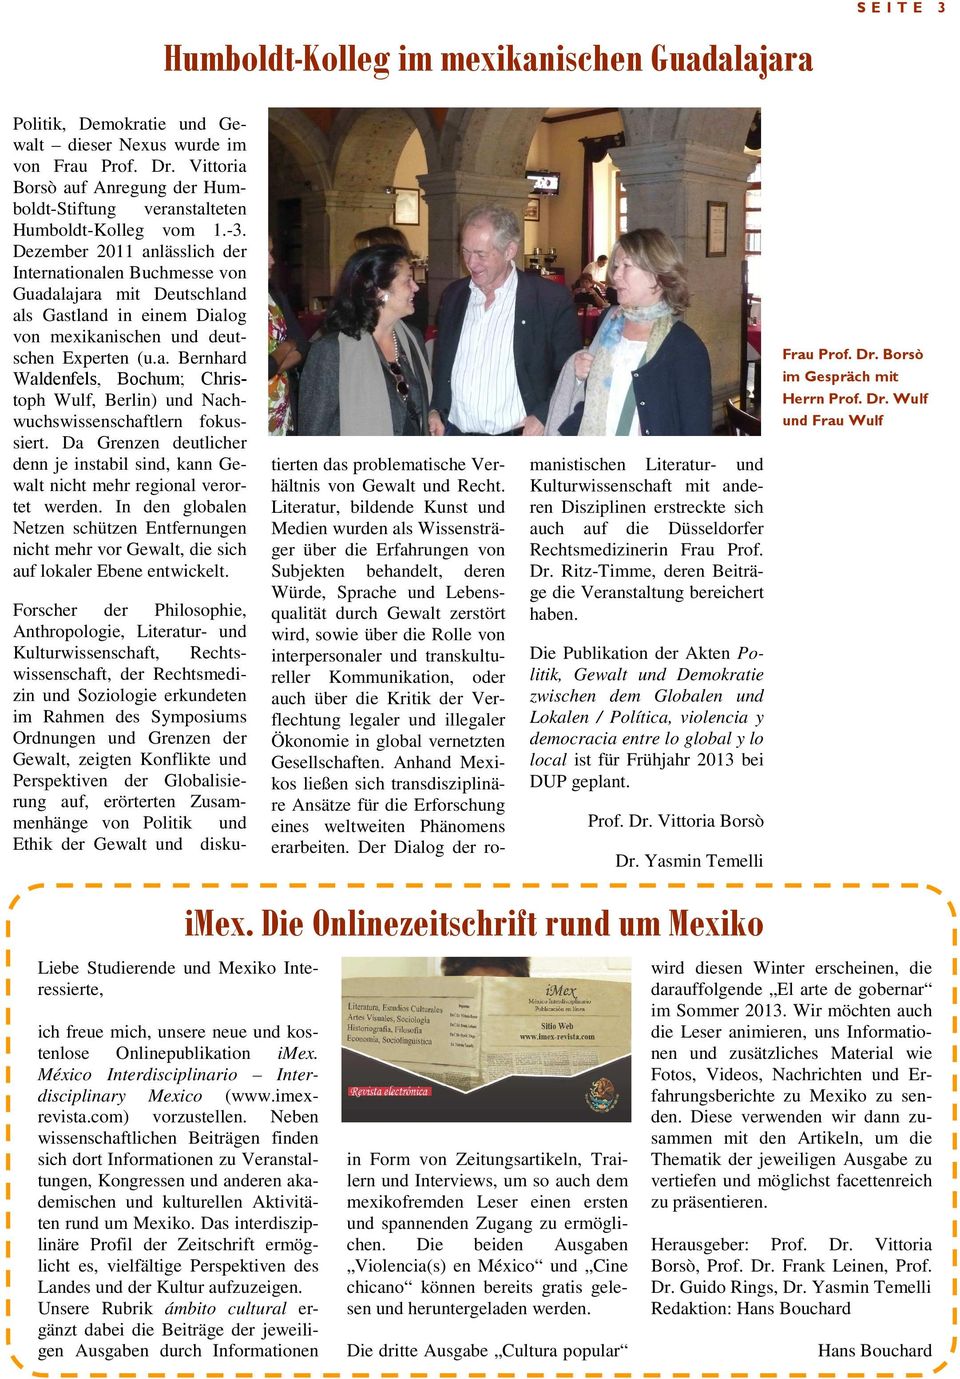 Dezember 2011 anlässlich der Internationalen Buchmesse von Guadalajara mit Deutschland als Gastland in einem Dialog von mexikanischen und deutschen Experten (u.a. Bernhard Waldenfels, Bochum; Christoph Wulf, Berlin) und Nachwuchswissenschaftlern fokussiert.